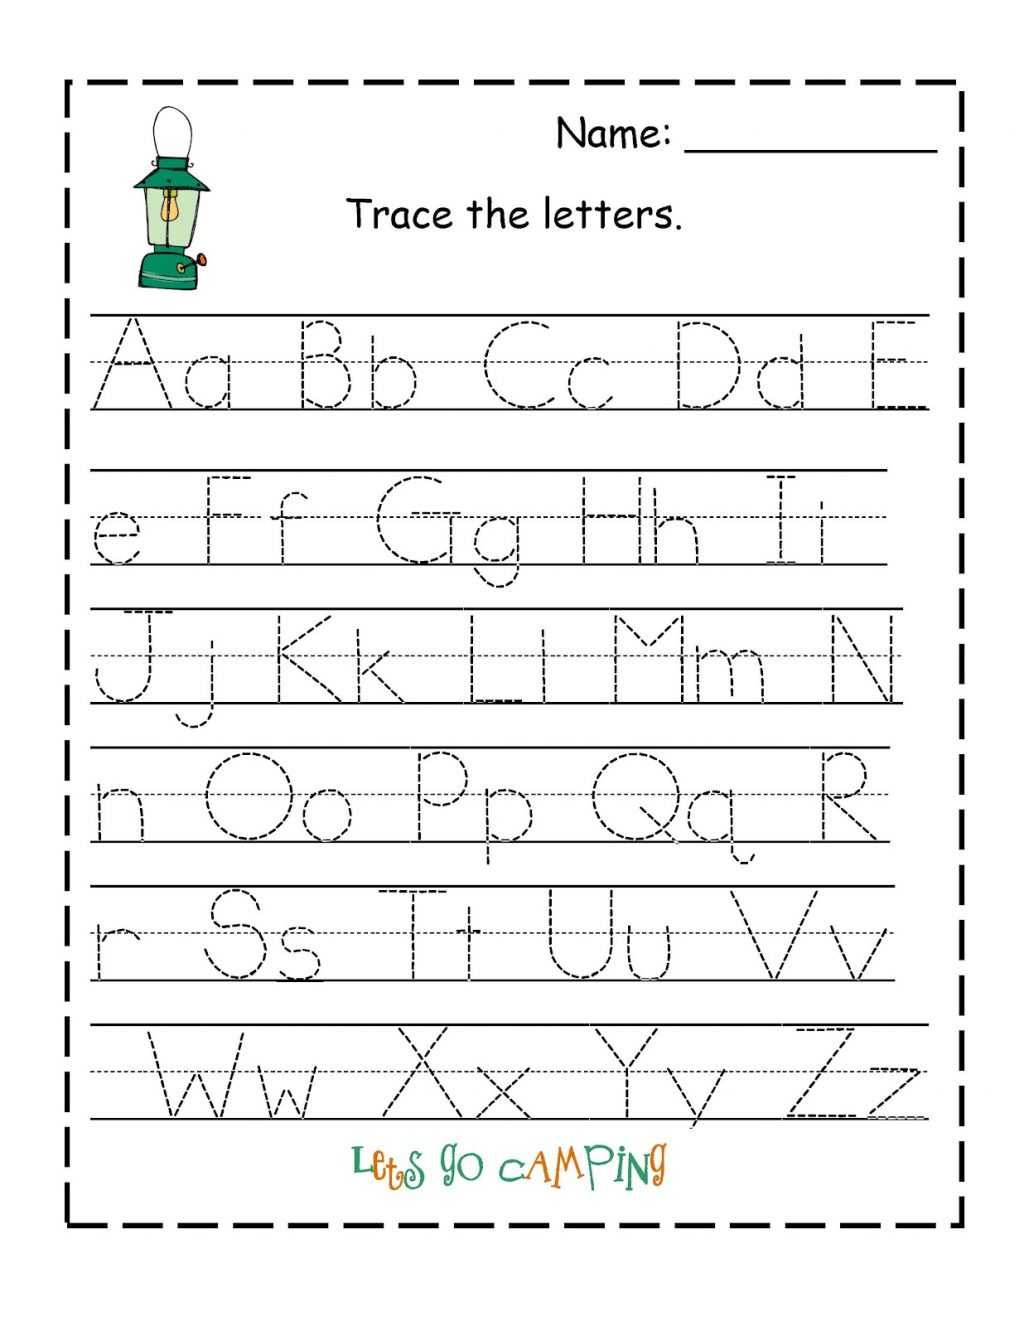 Kids Worksheets Free Printable Preschool G Numbers Name Pdf in Preschool Tracing Letters Name